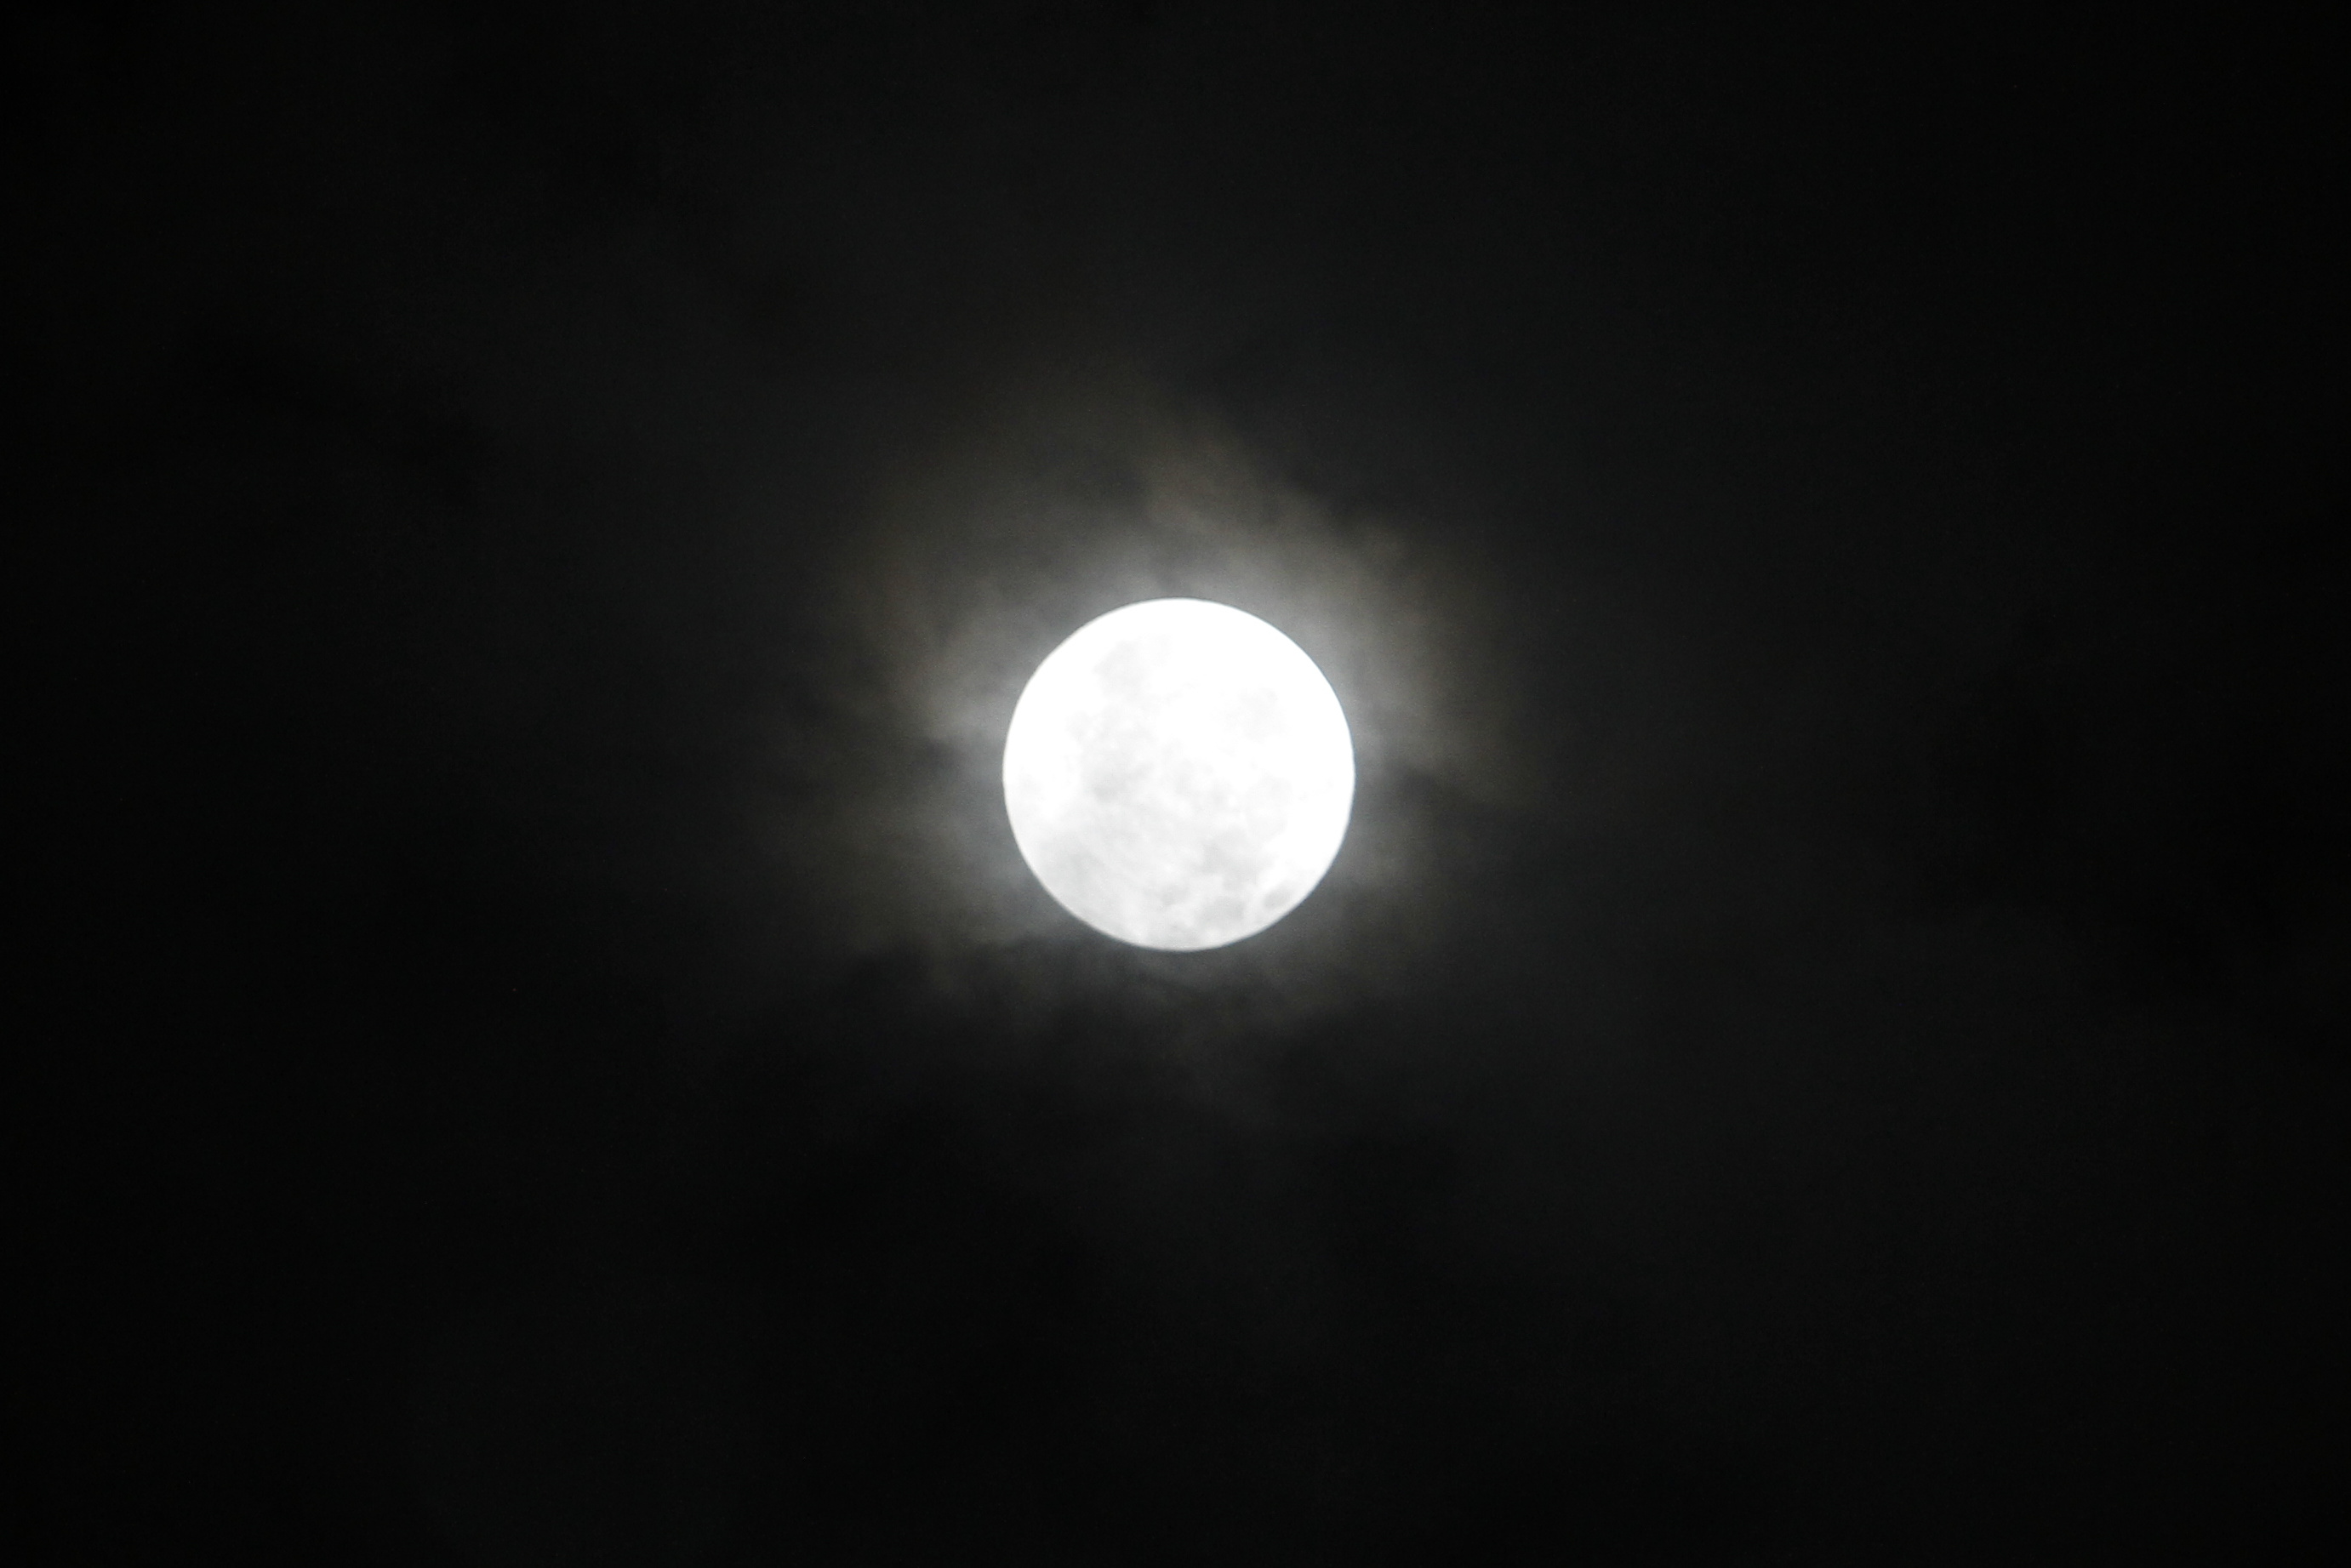 Fenomena alam Gerhana Bulan Penumbra terjadi karena sebagian atau keseluruhan penampang Bulan tertutupi oleh bayangan Bumi (Ashar/Sinpo.id